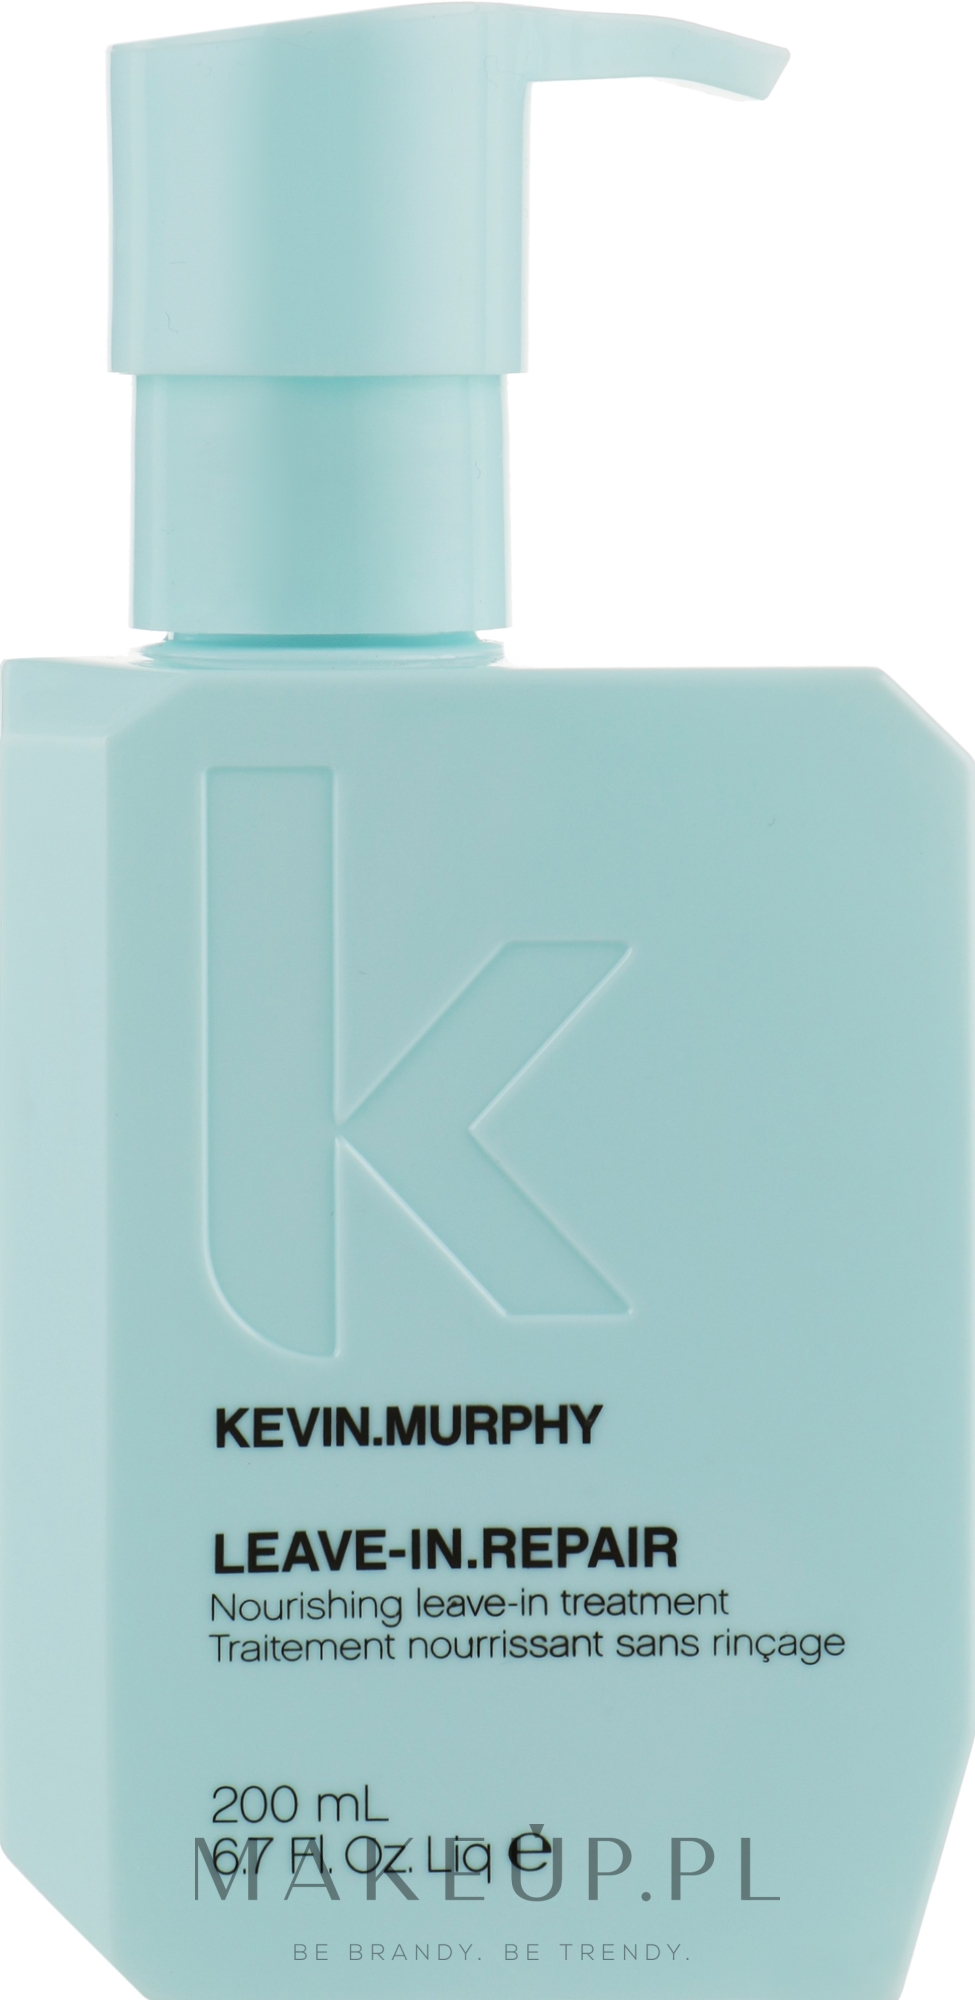 Odżywka bez spłukiwania do włosów - Kevin.Murphy Leave-In.Repair Nourishing Leave-In Treatment — Zdjęcie 200 ml